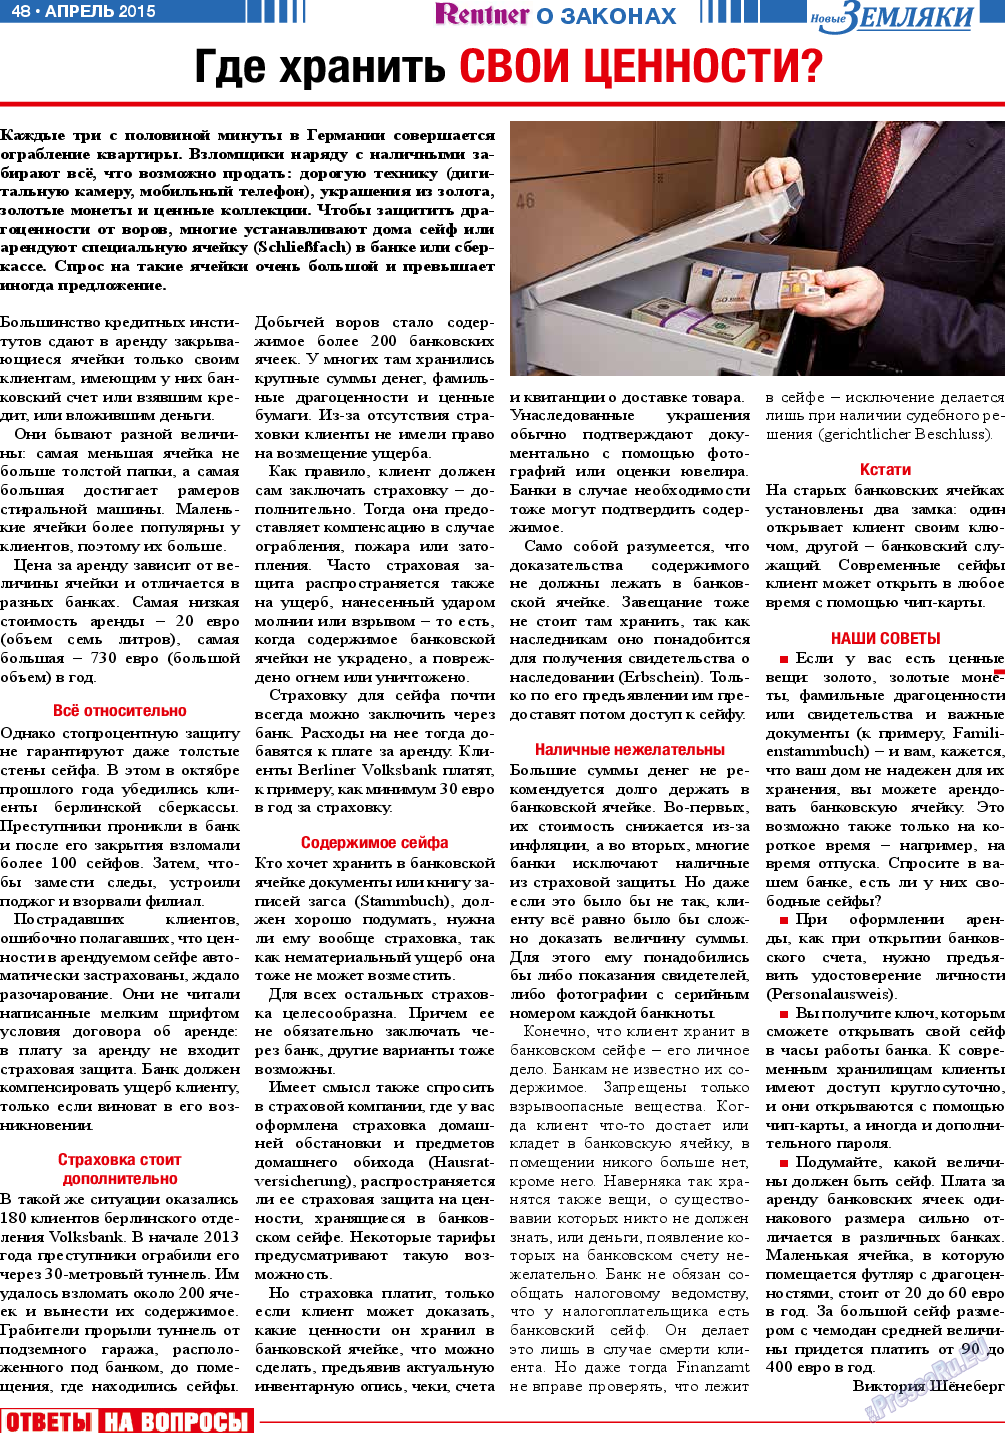 Новые Земляки, газета. 2015 №4 стр.48